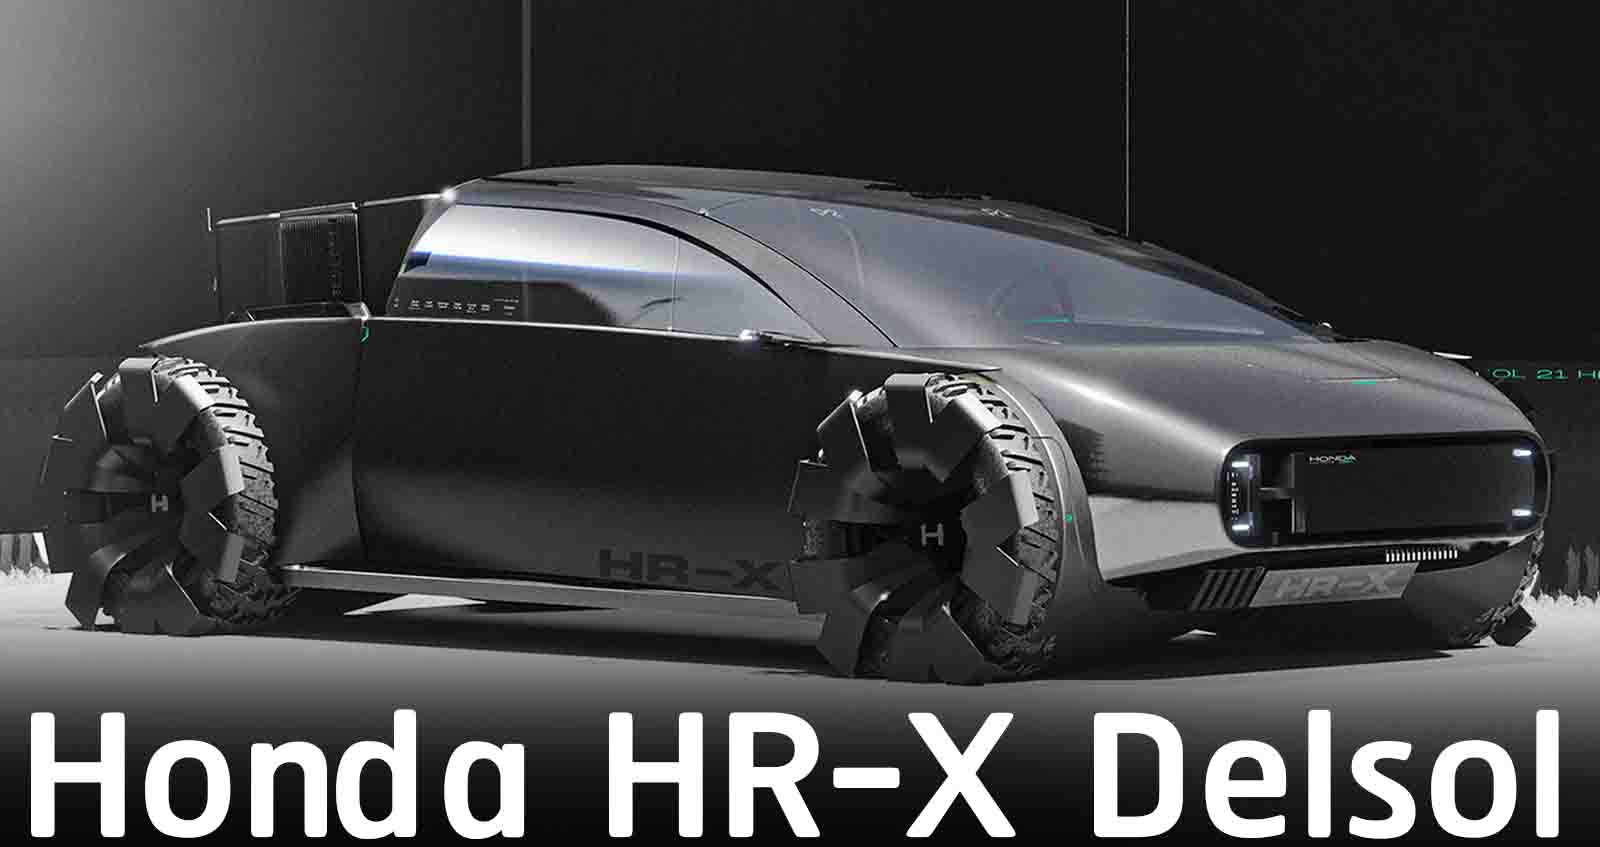 Honda HR-X Delsol กระบะไฟฟ้า ที่ไม่เหมือนใคร โดย Alexis